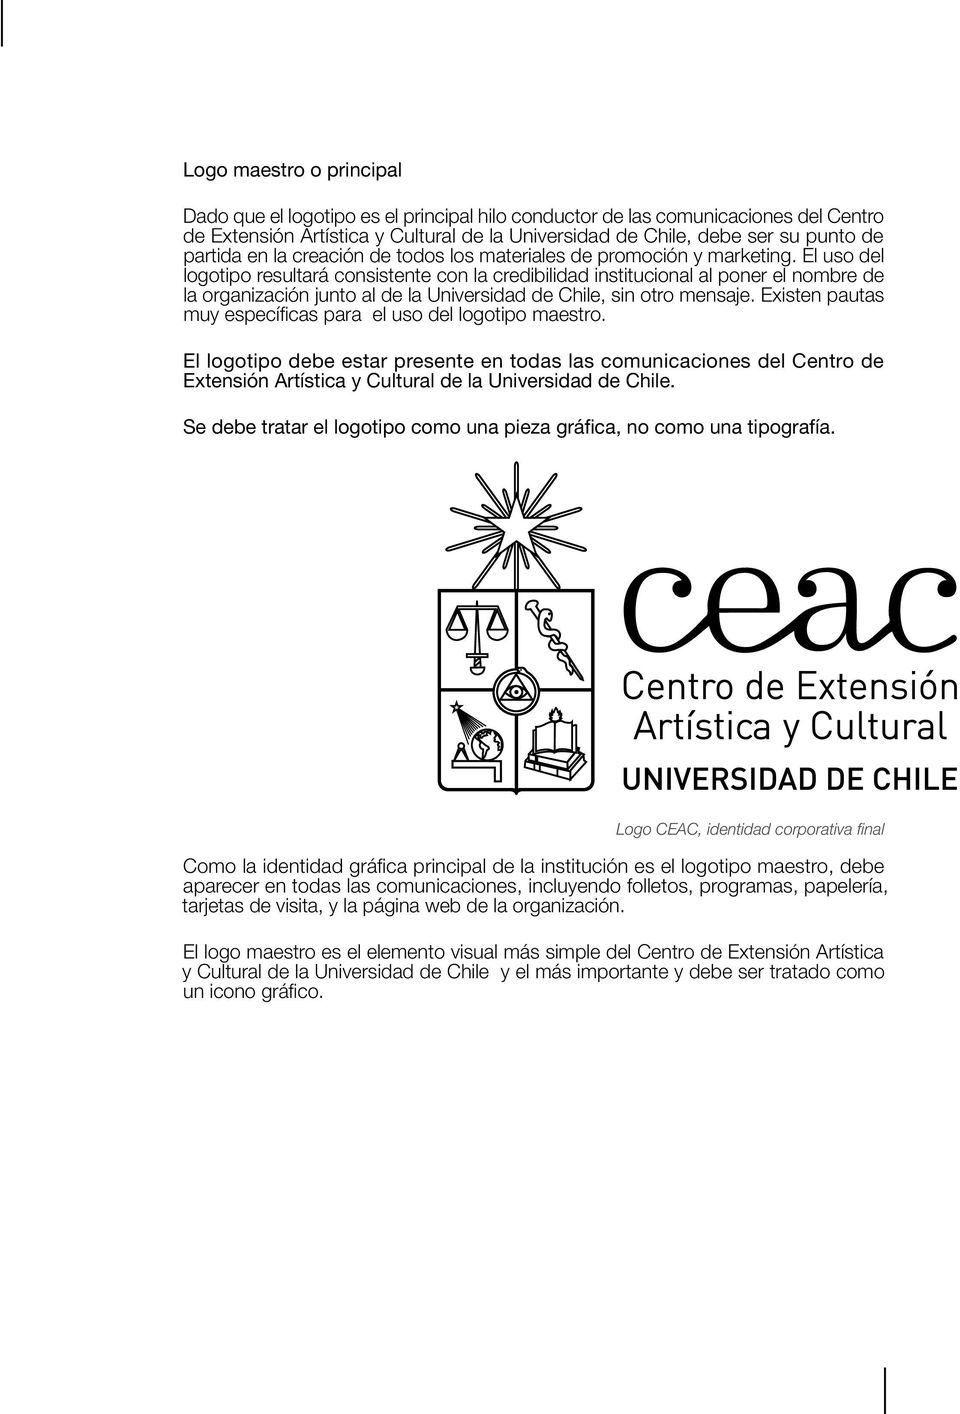 El uso del logotipo resultará consistente con la credibilidad institucional al poner el nombre de la organización junto al de la Universidad de Chile, sin otro mensaje.